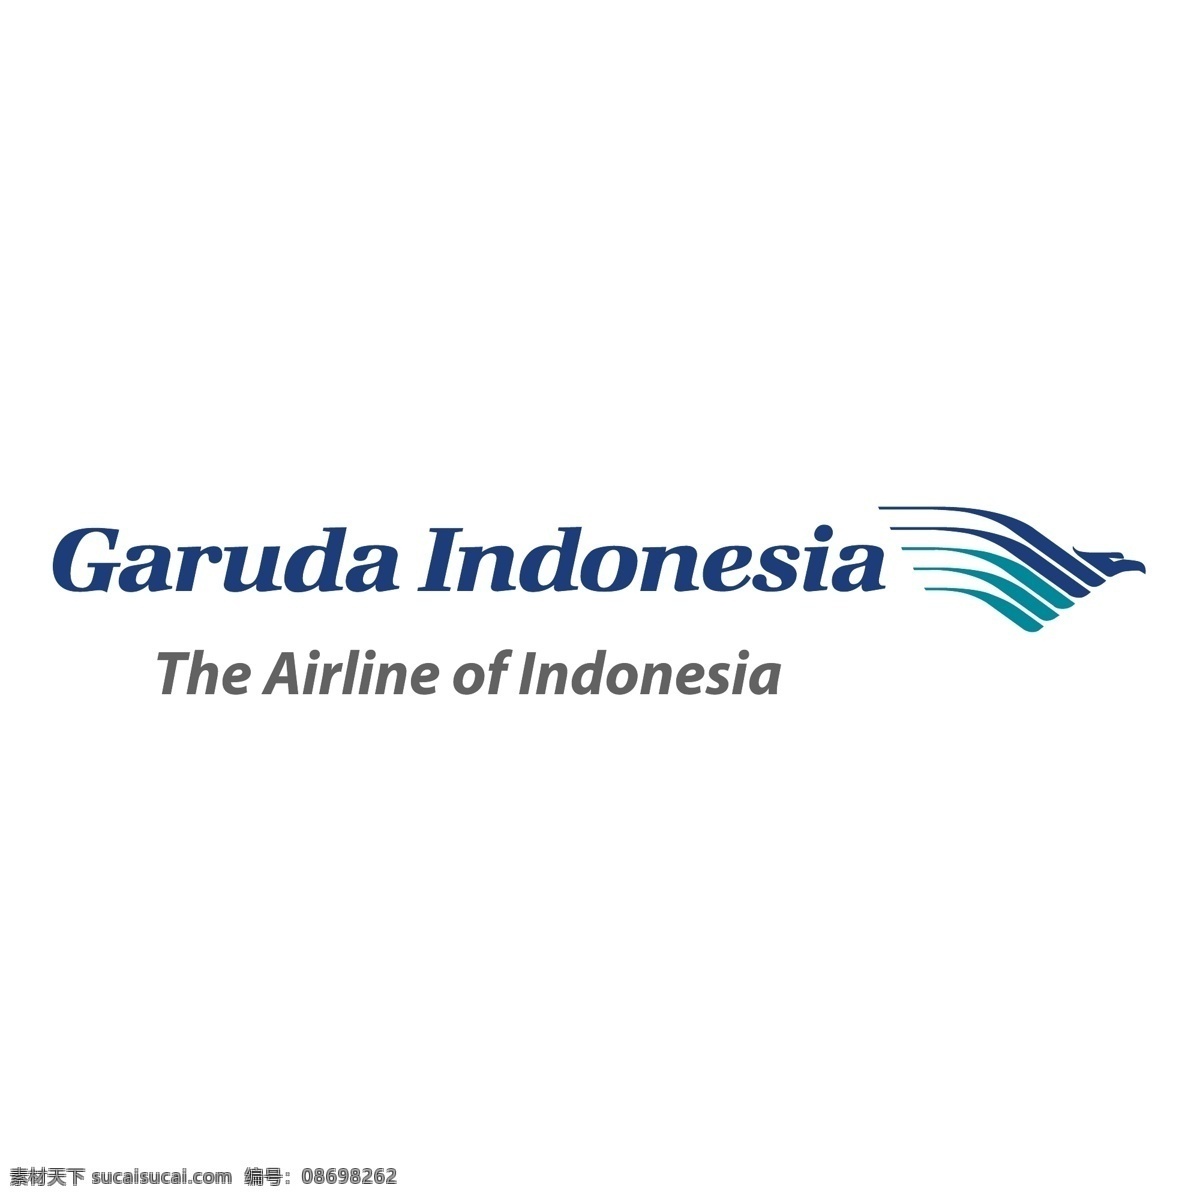 印度尼西亚 航空公司 自由 鹰 标志 标识 psd源文件 logo设计